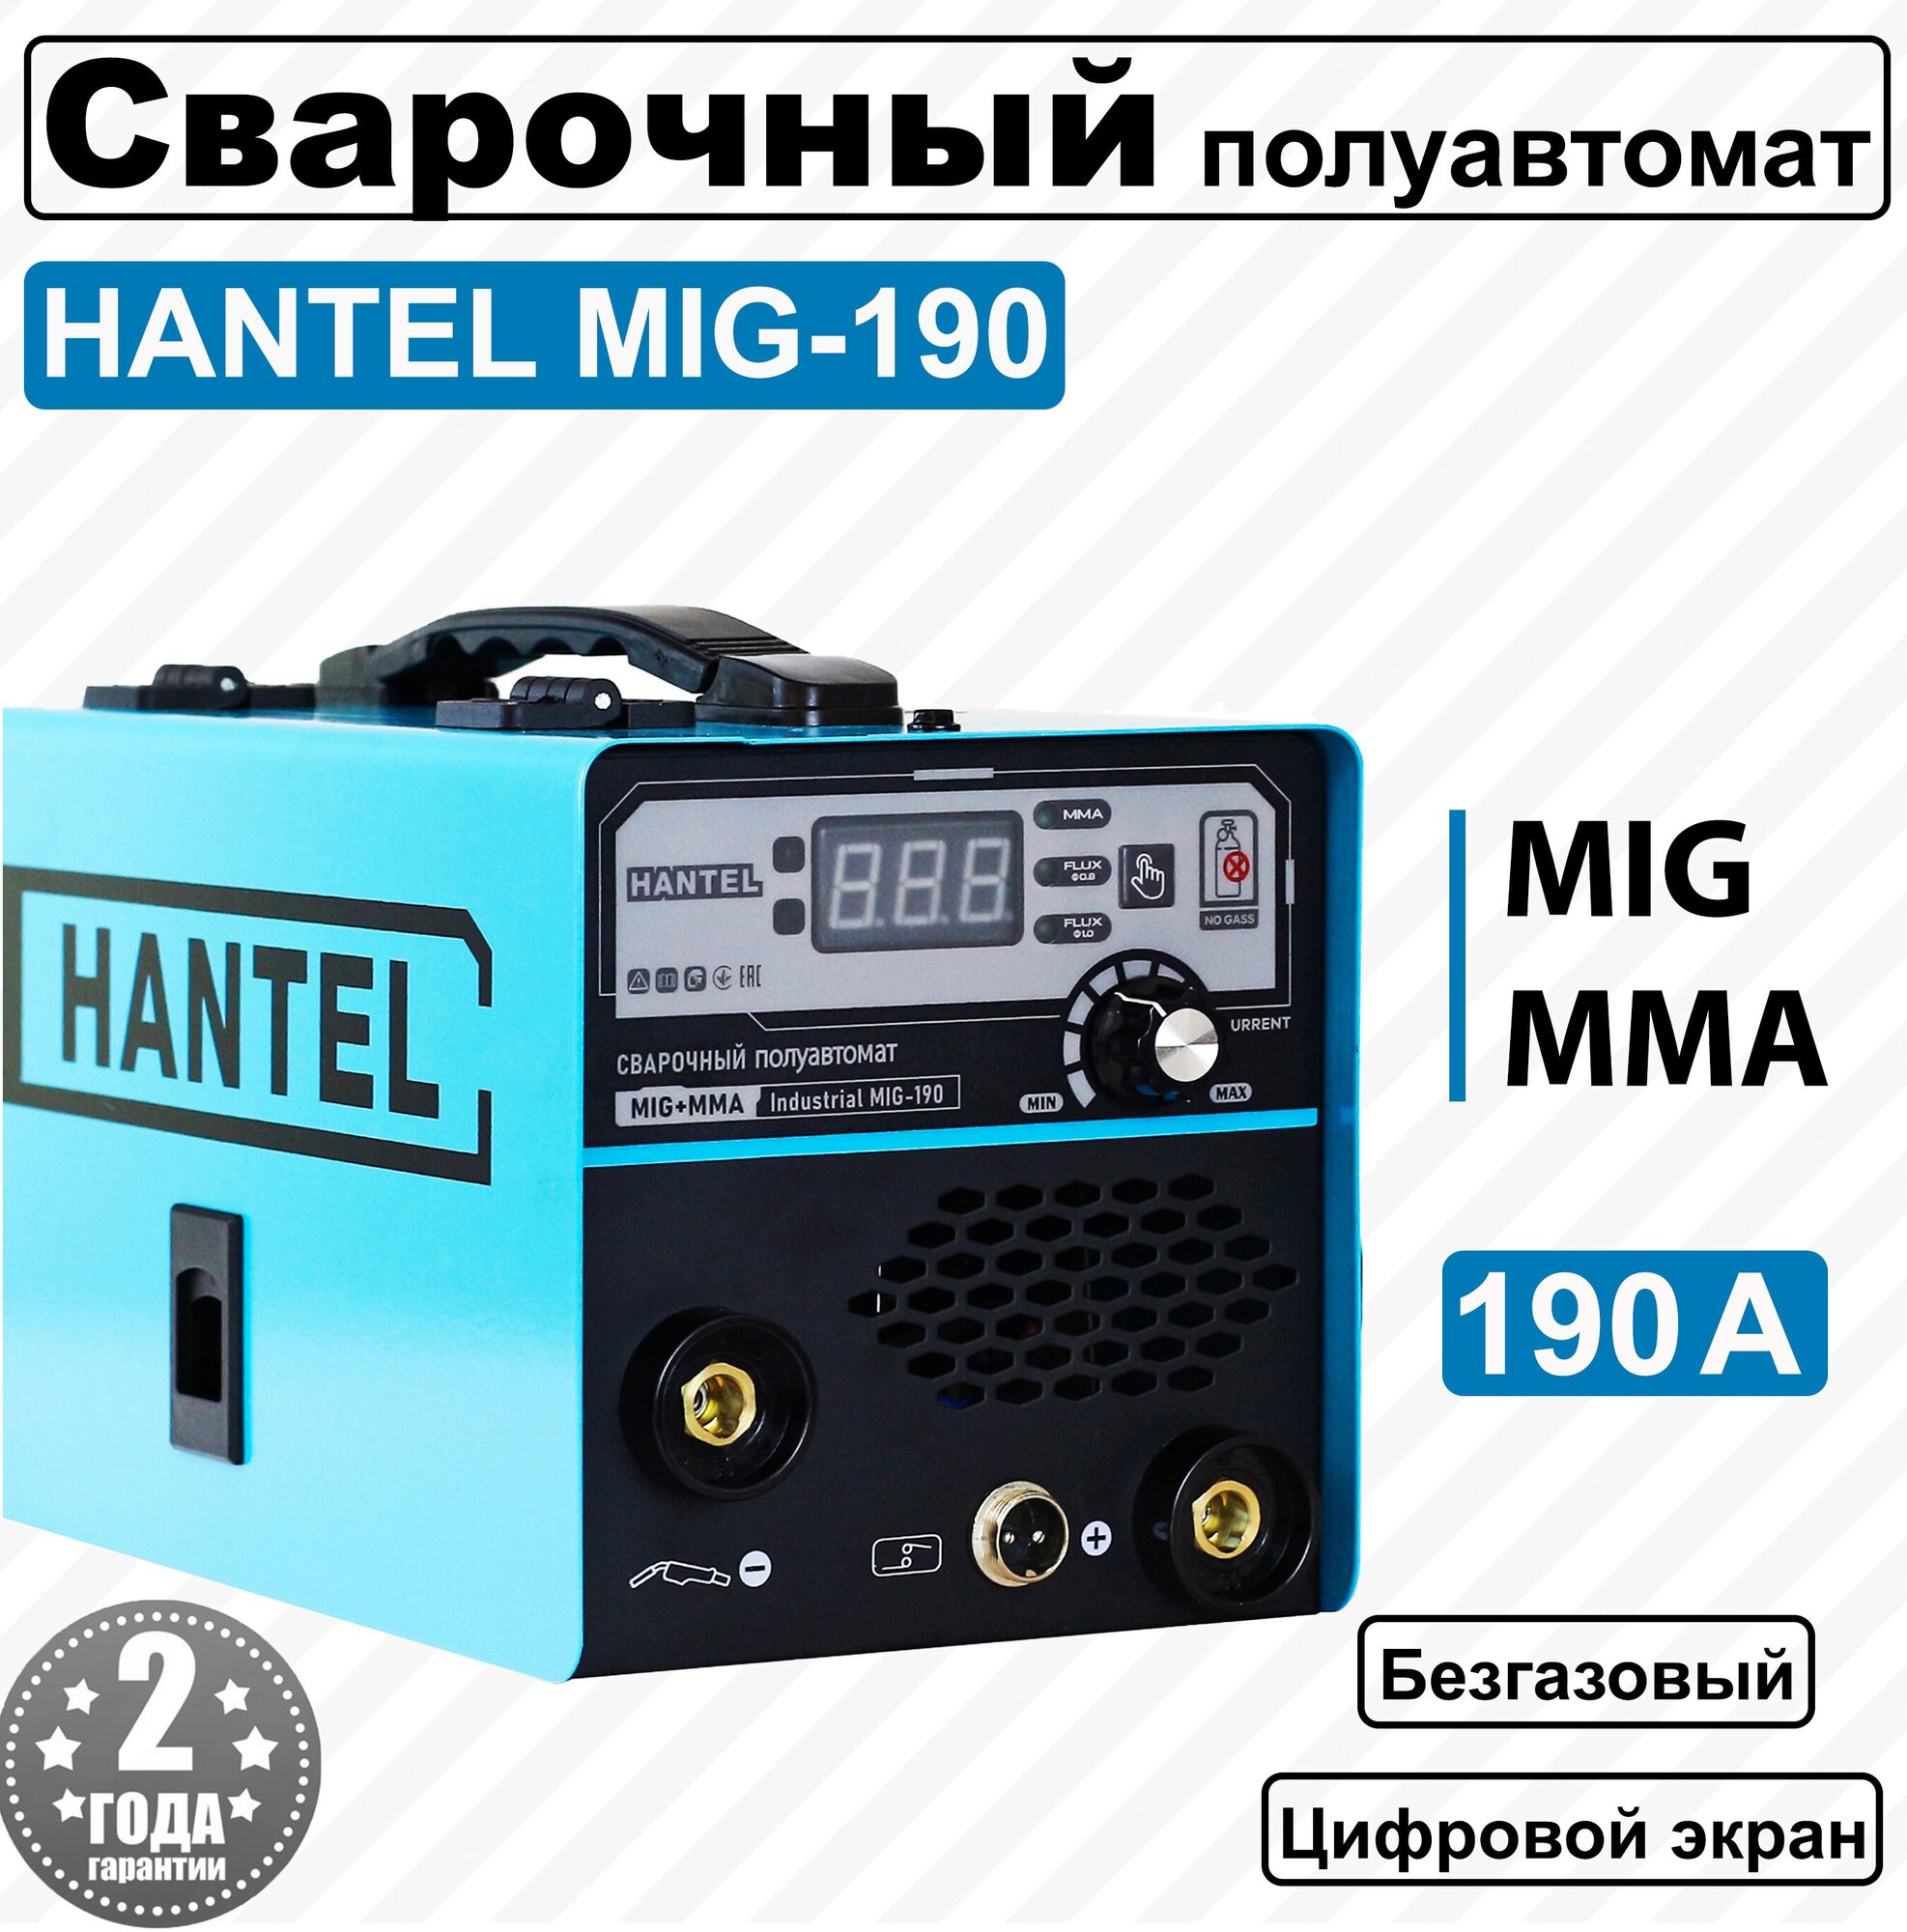 Сварочный полуавтомат Hantel MIG 190/ сварка без газа/ сварка MIG/MAG/MMA